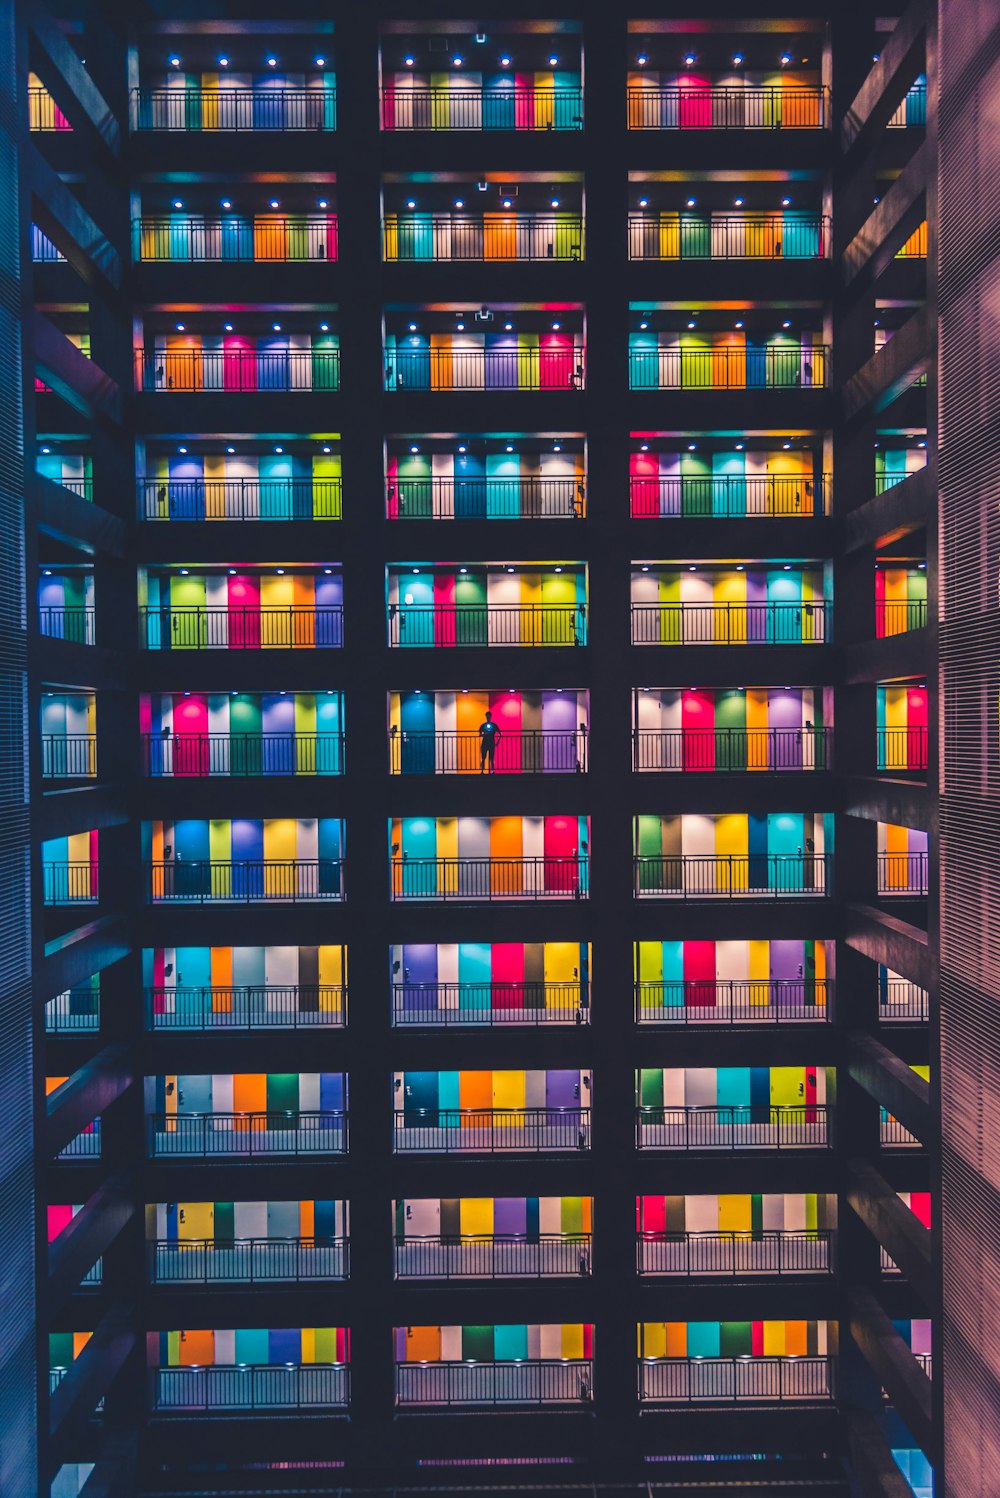 Una stanza piena di tante scatole colorate diverse